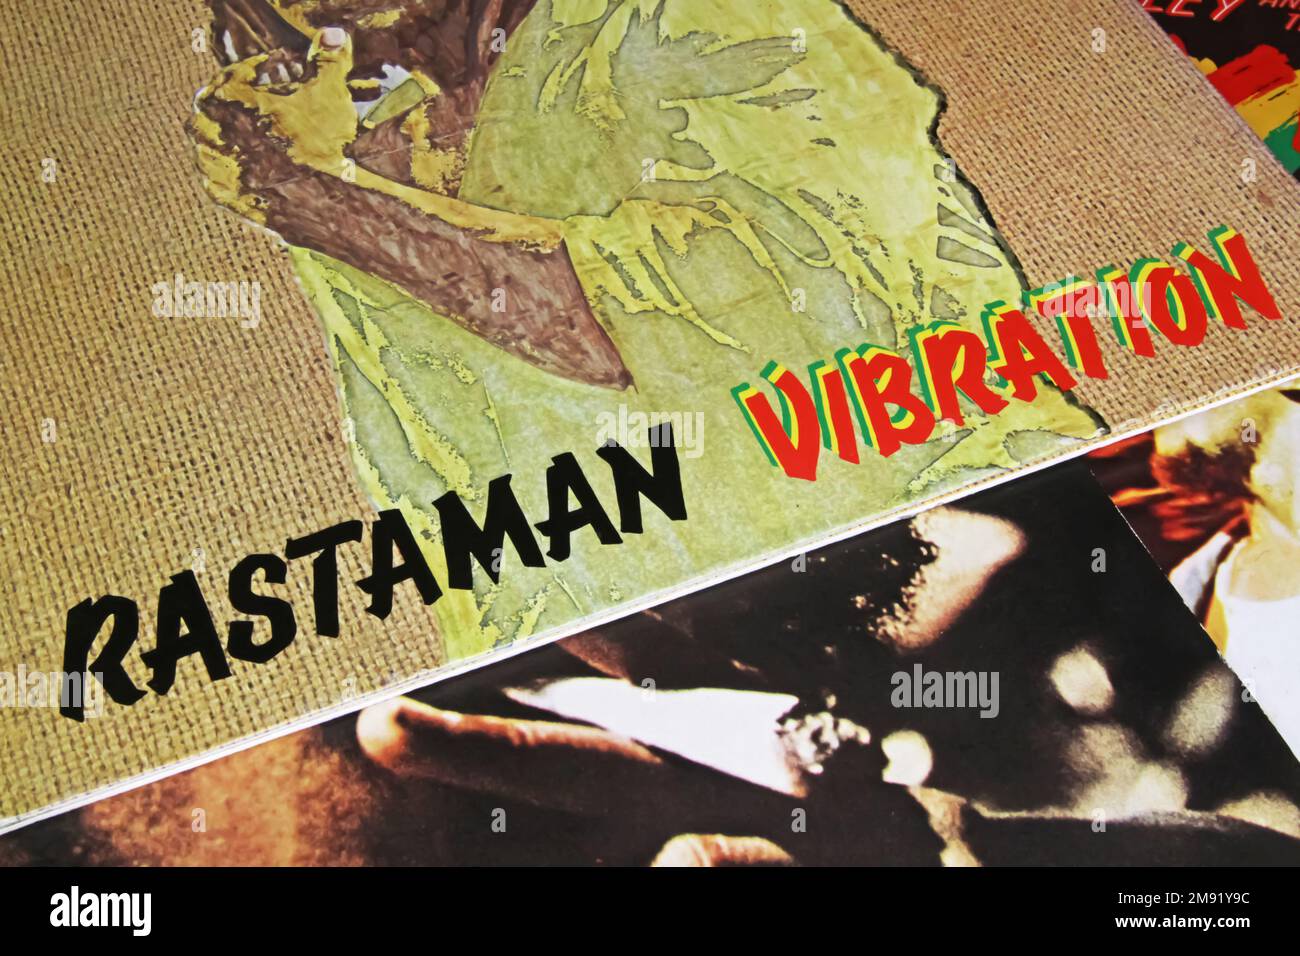 Viersen, Germania - Novembre 9. 2022: Primo piano del disco in vinile isolato Rastaman Vibration album di Bob Marley, pubblicato nel 1976 Foto Stock